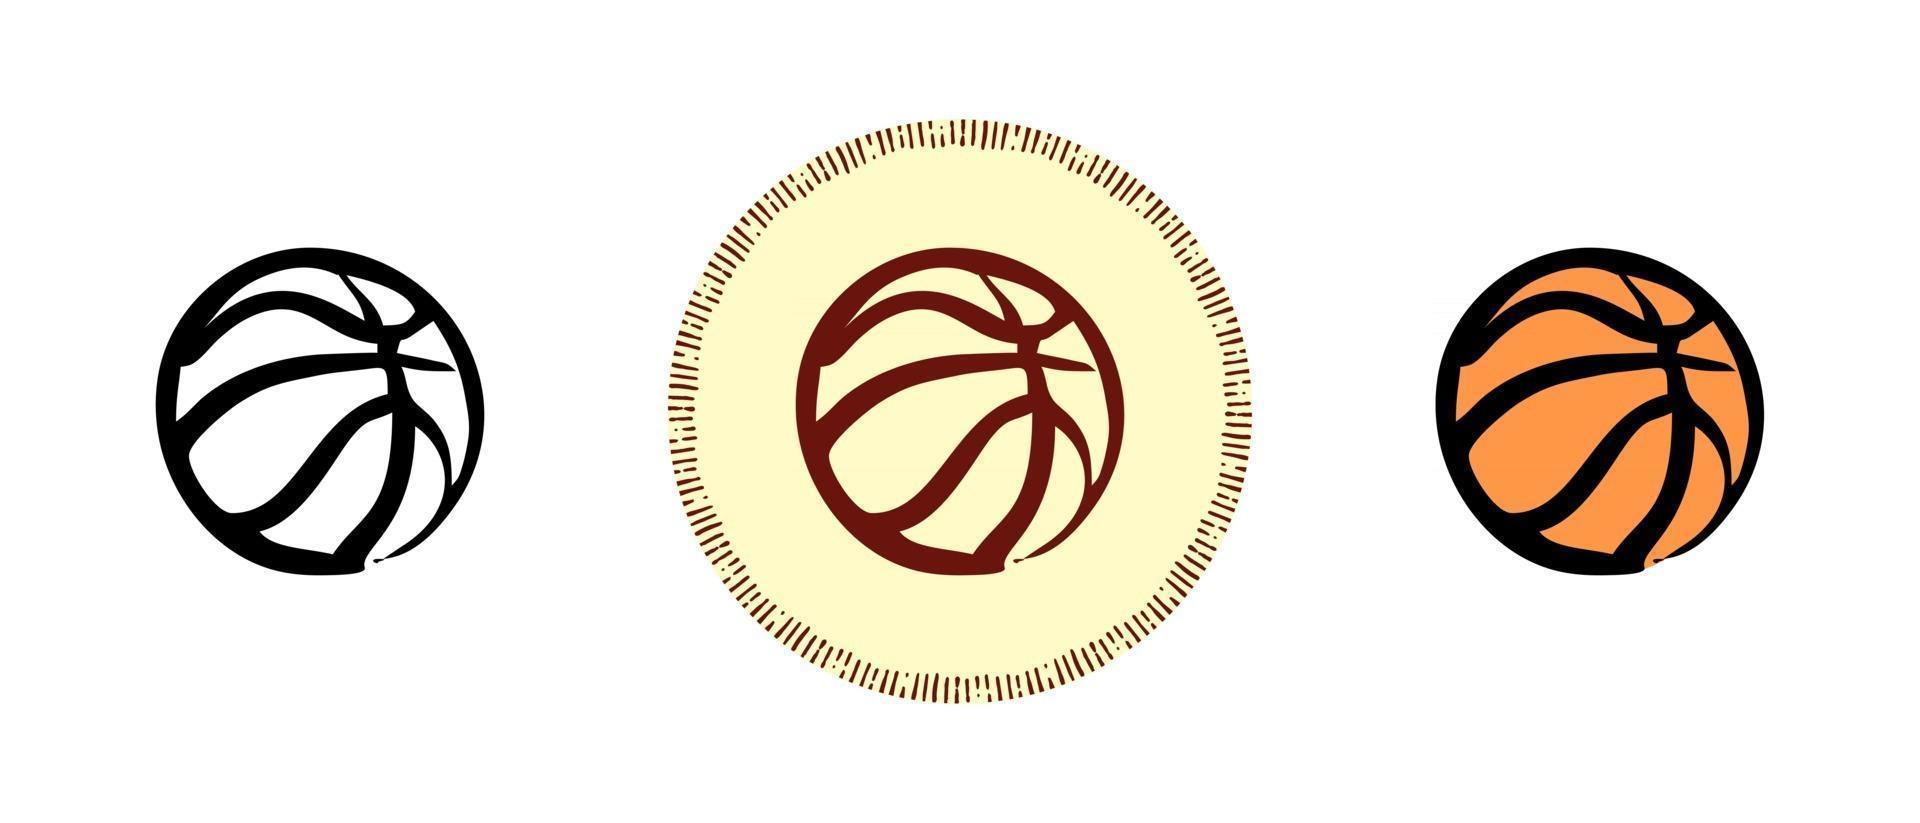 Basketball Umriss und Farben und Retro-Symbole vektor